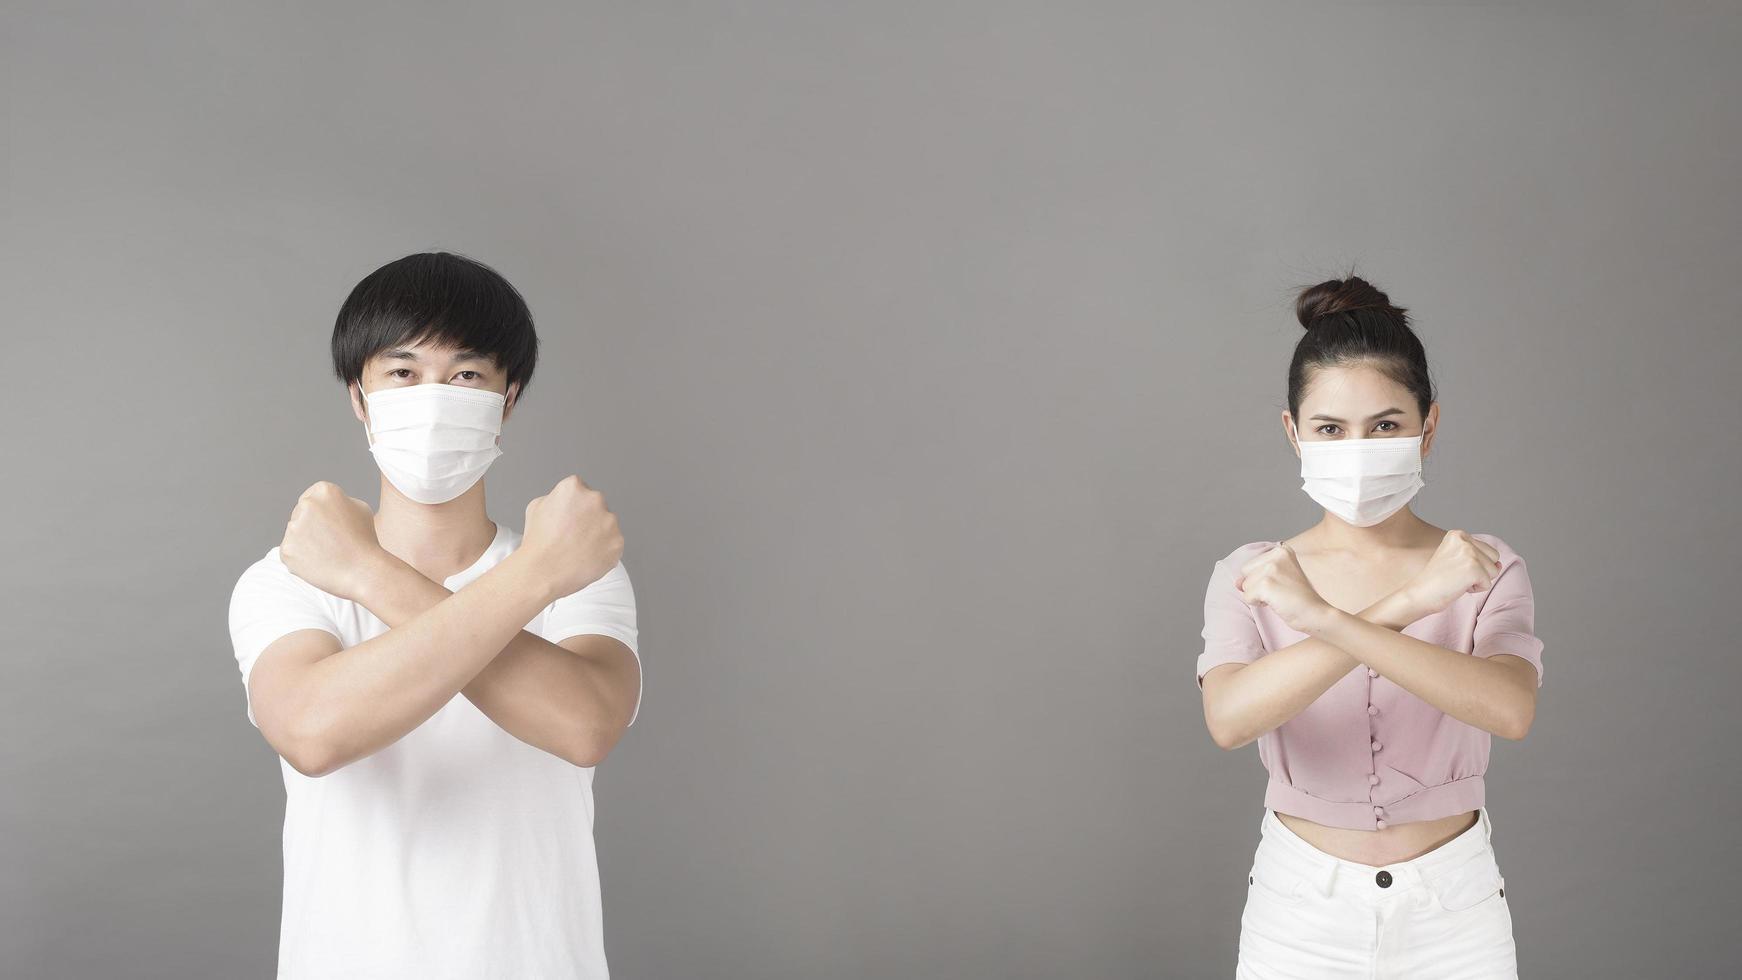 retrato de homem e mulher com máscara cirúrgica em estúdio, conceito de distanciamento social foto